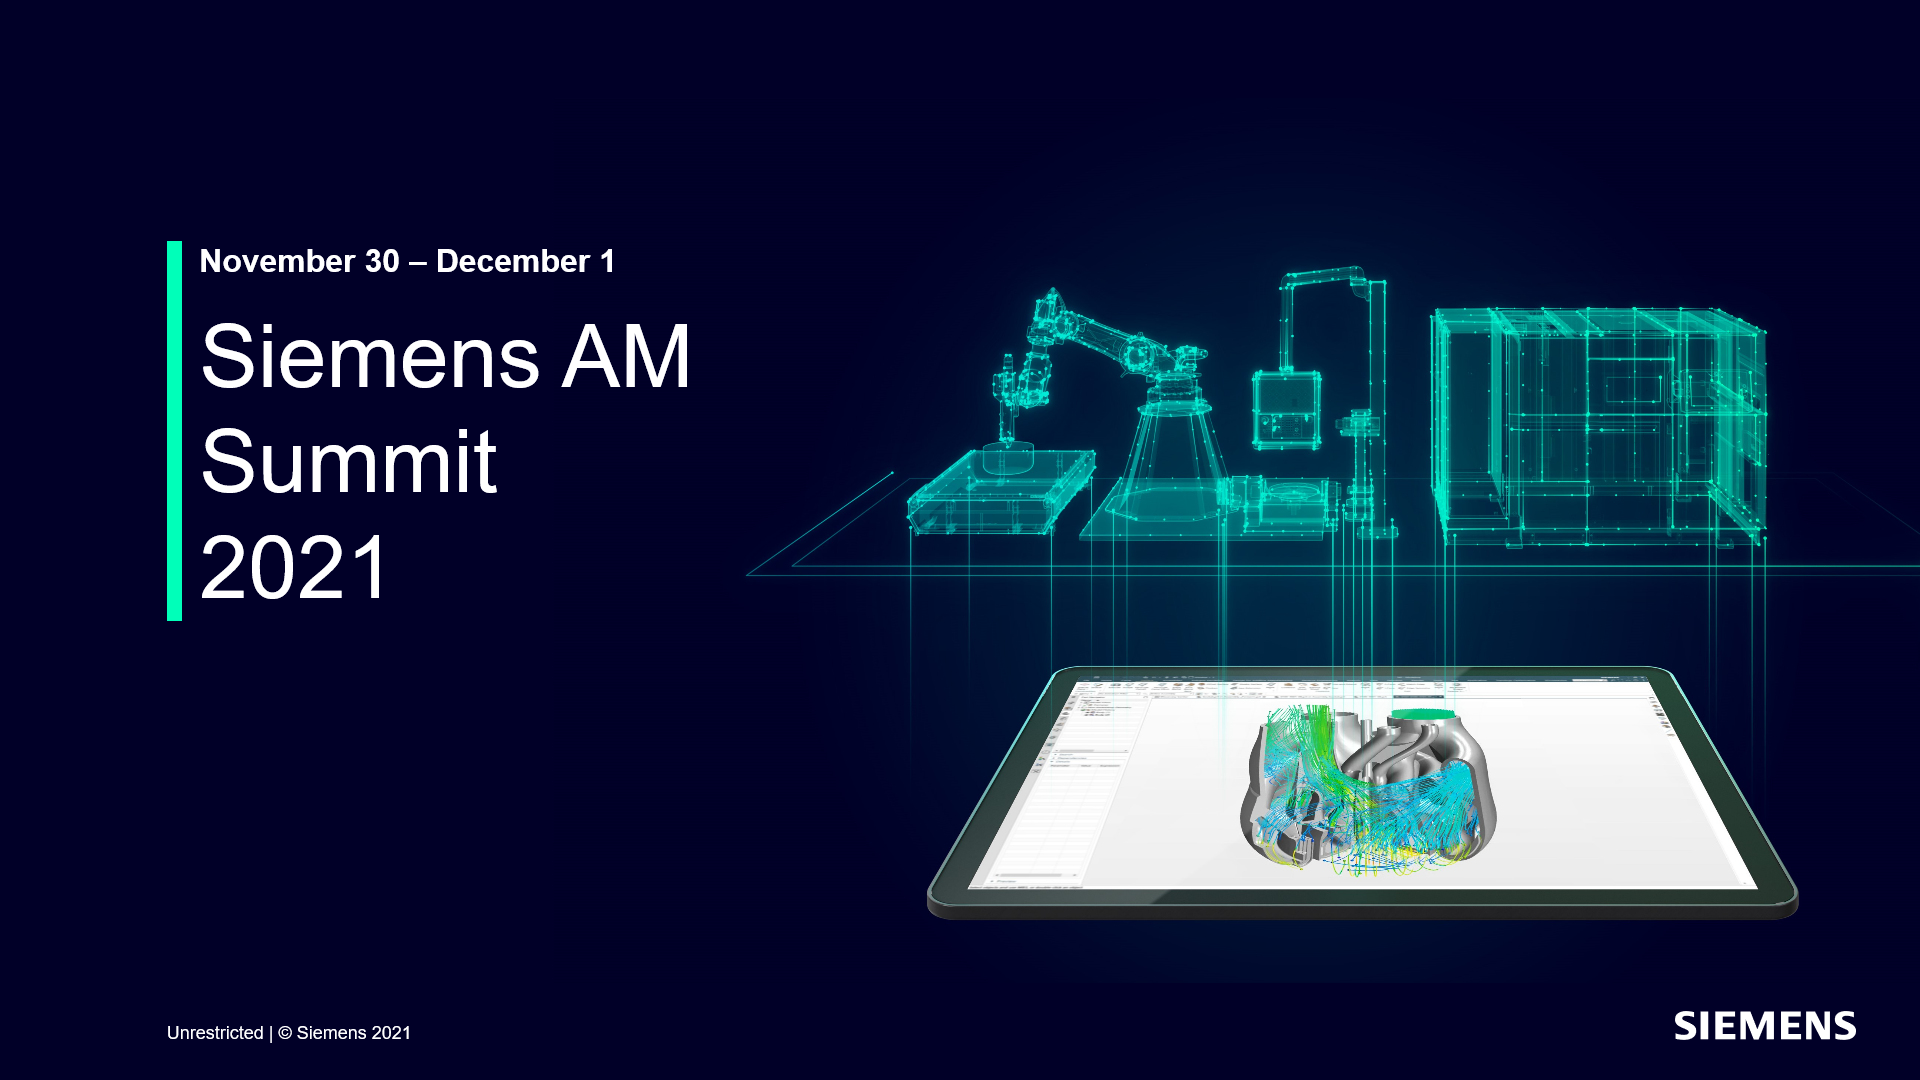 Siemens AM Summit 2021